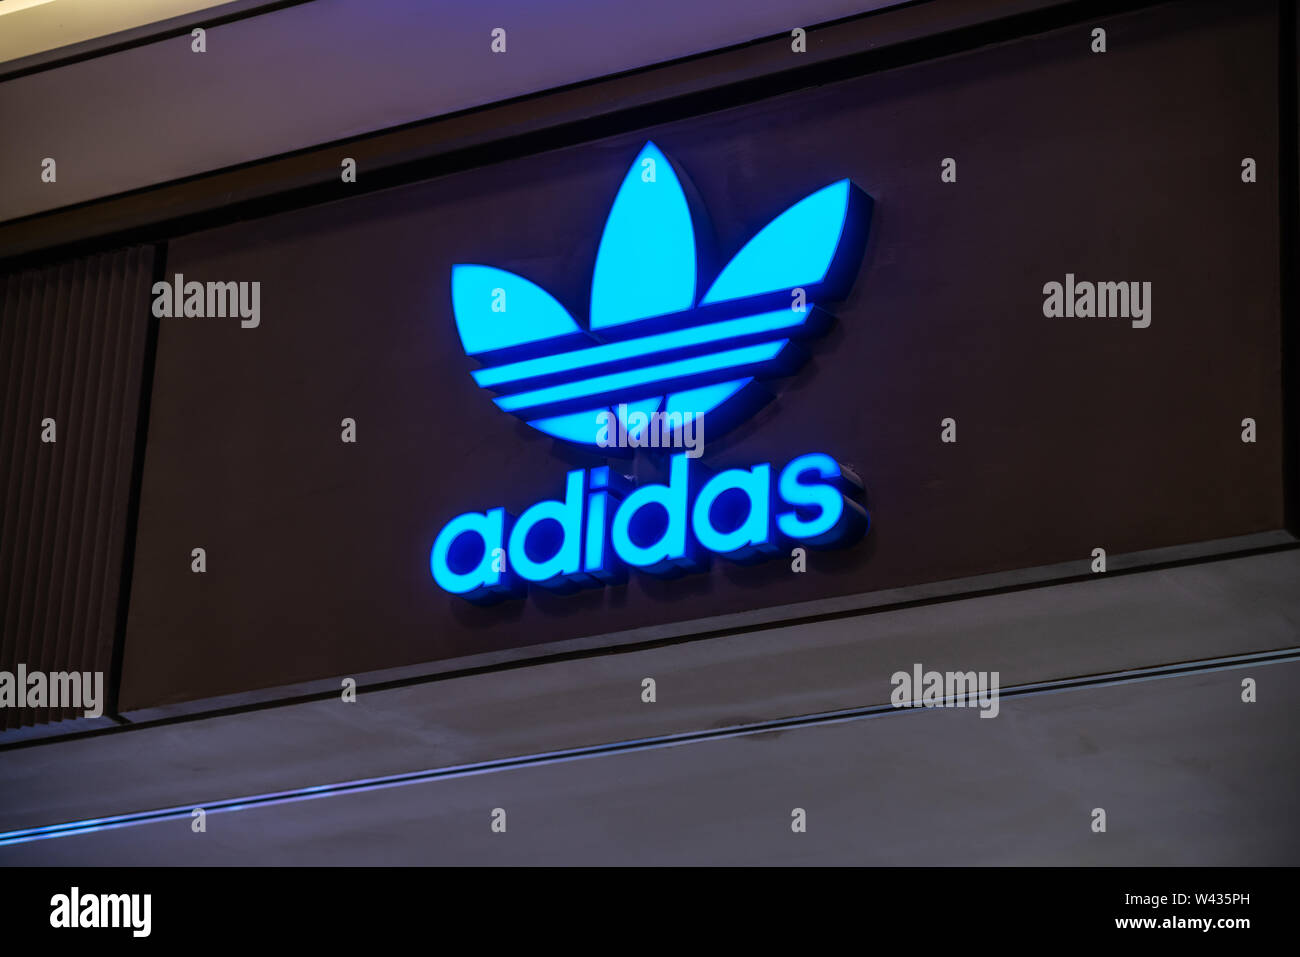 Adidas original Banque de photographies et d'images à haute résolution -  Alamy